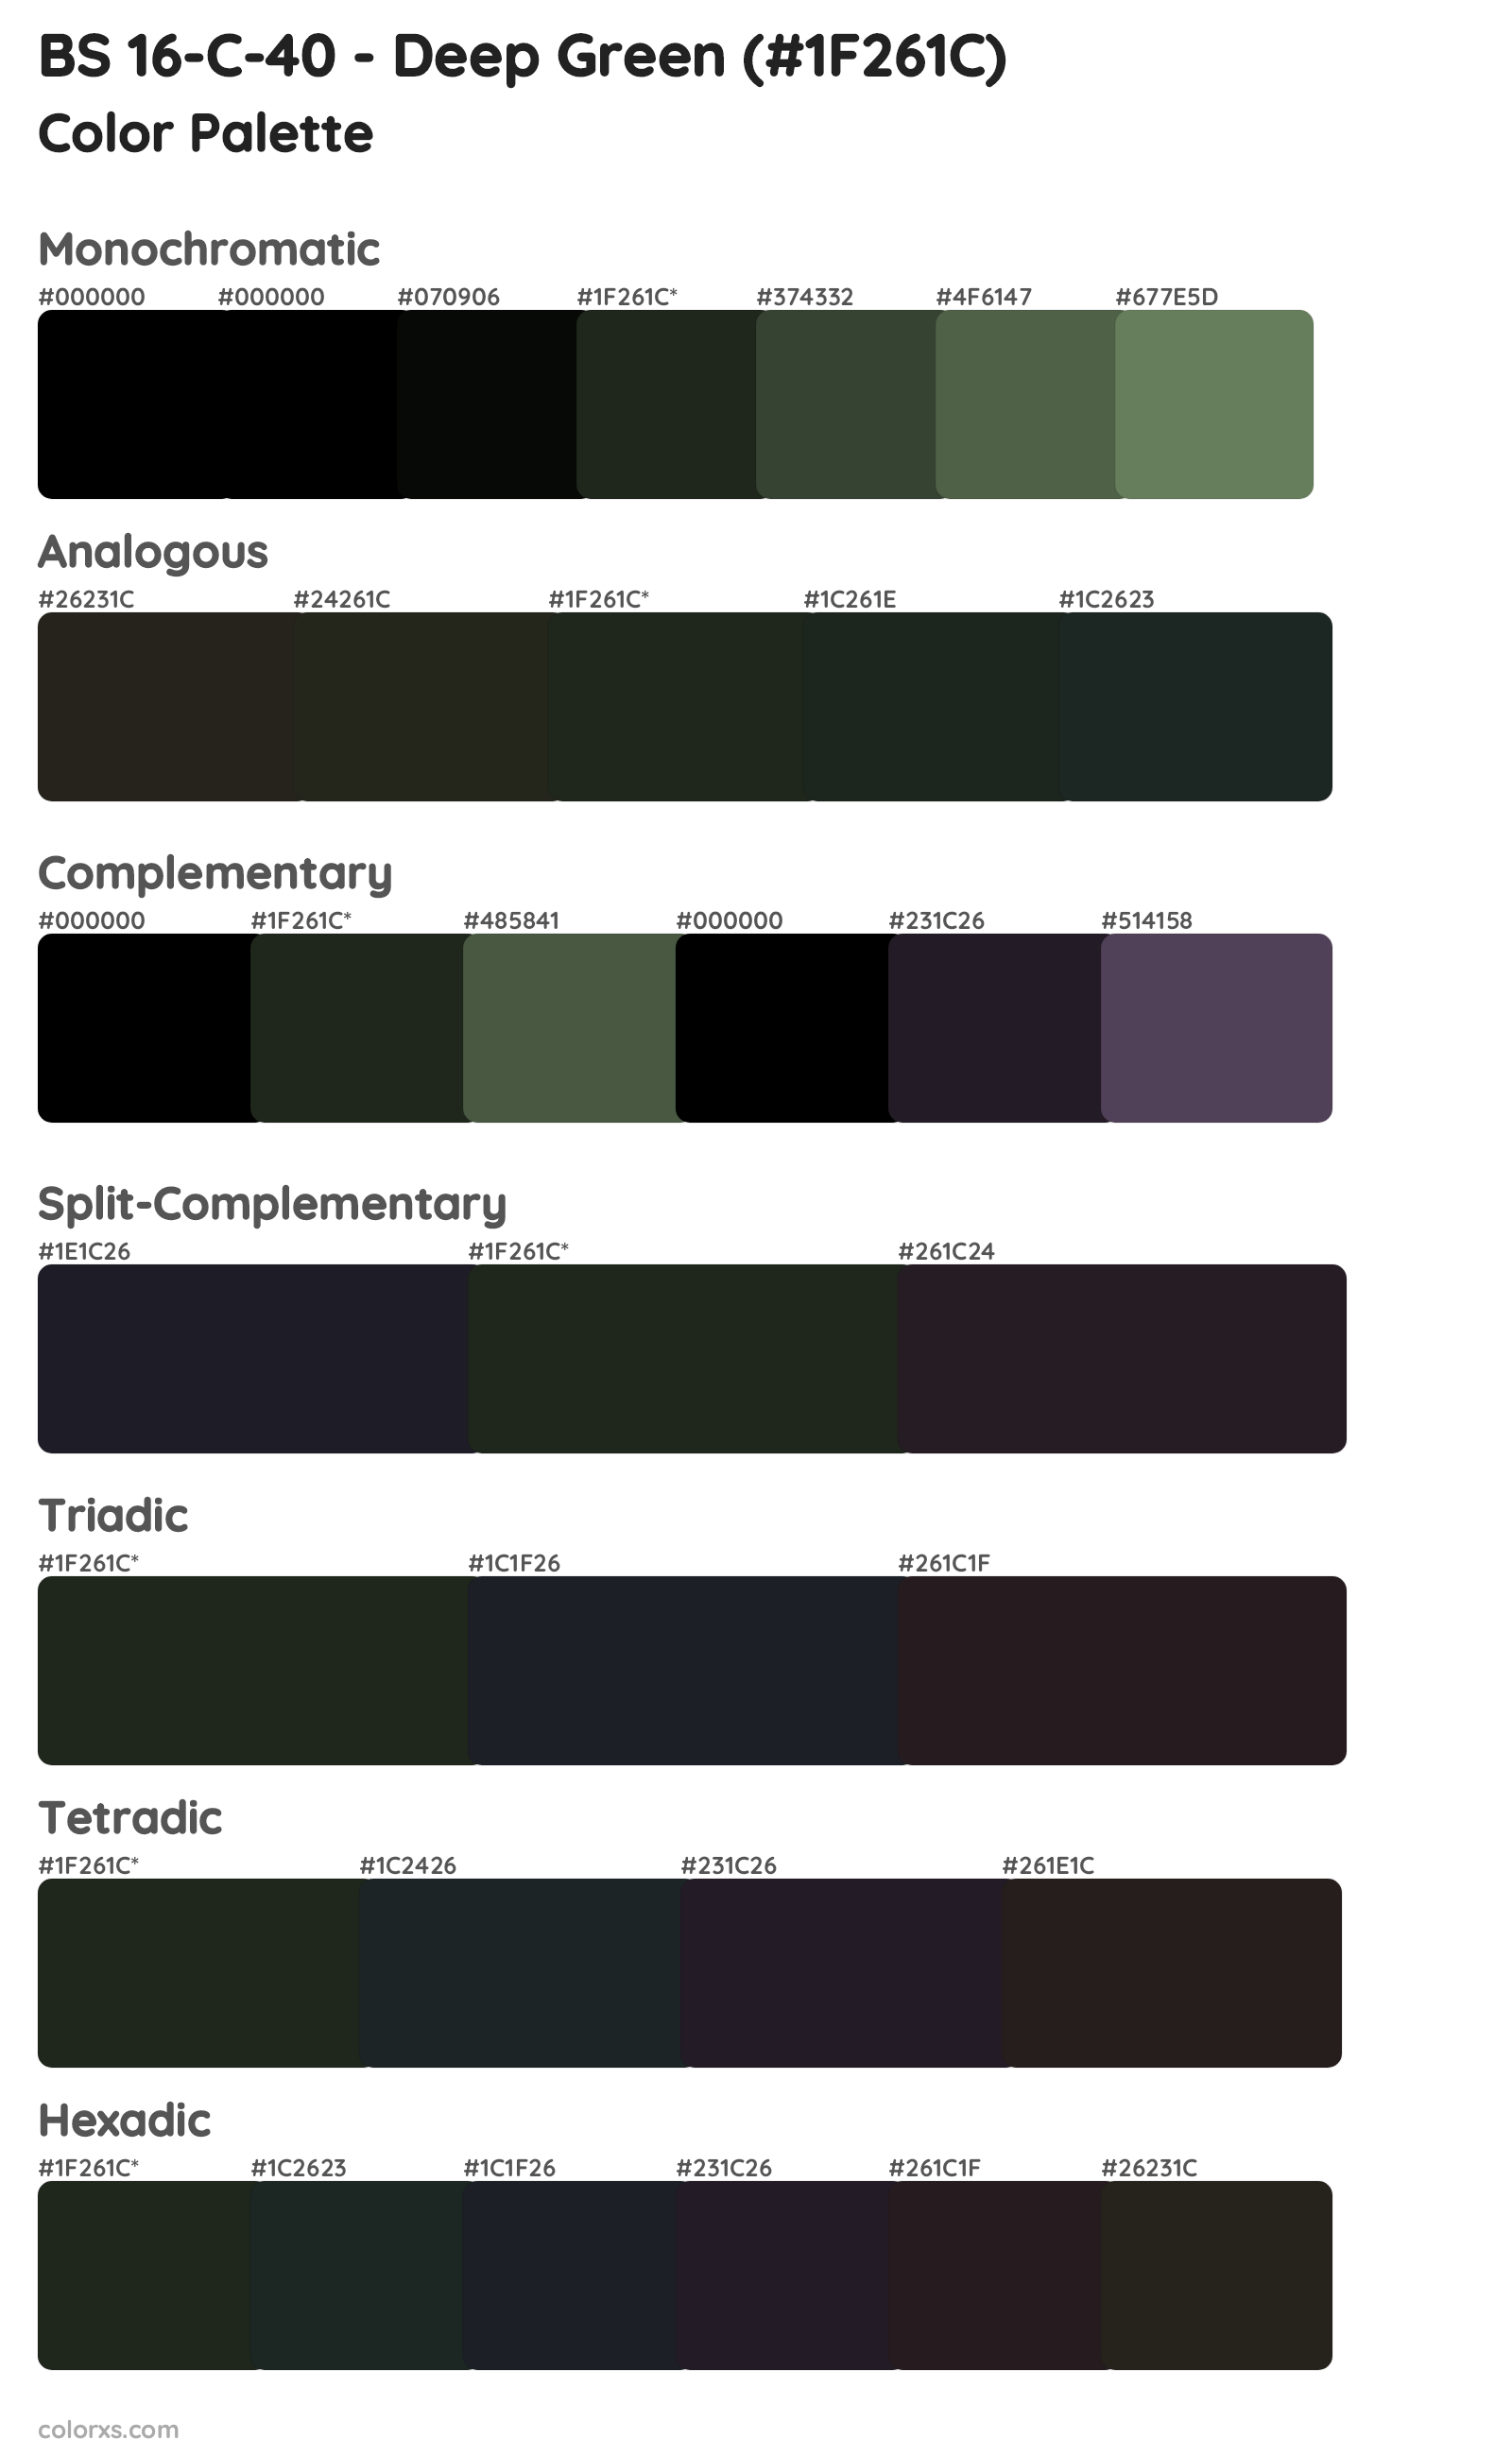 BS 16-C-40 - Deep Green Color Scheme Palettes